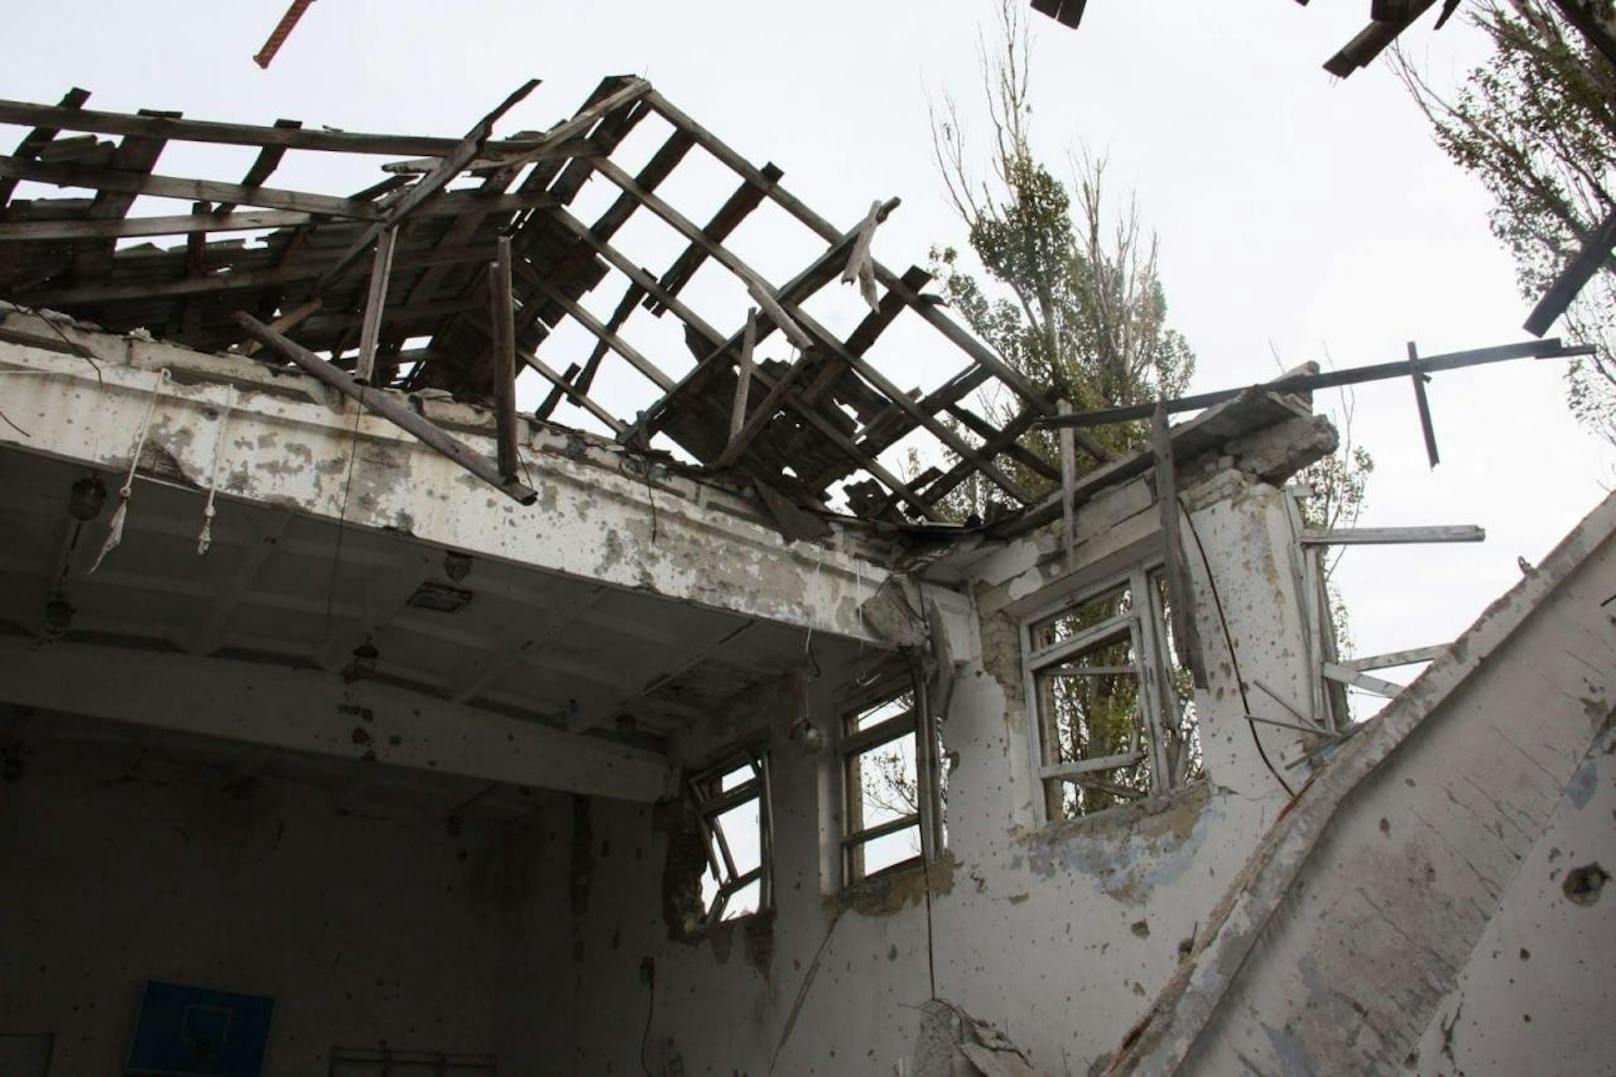 Zerbombtes Haus in der Ukraine